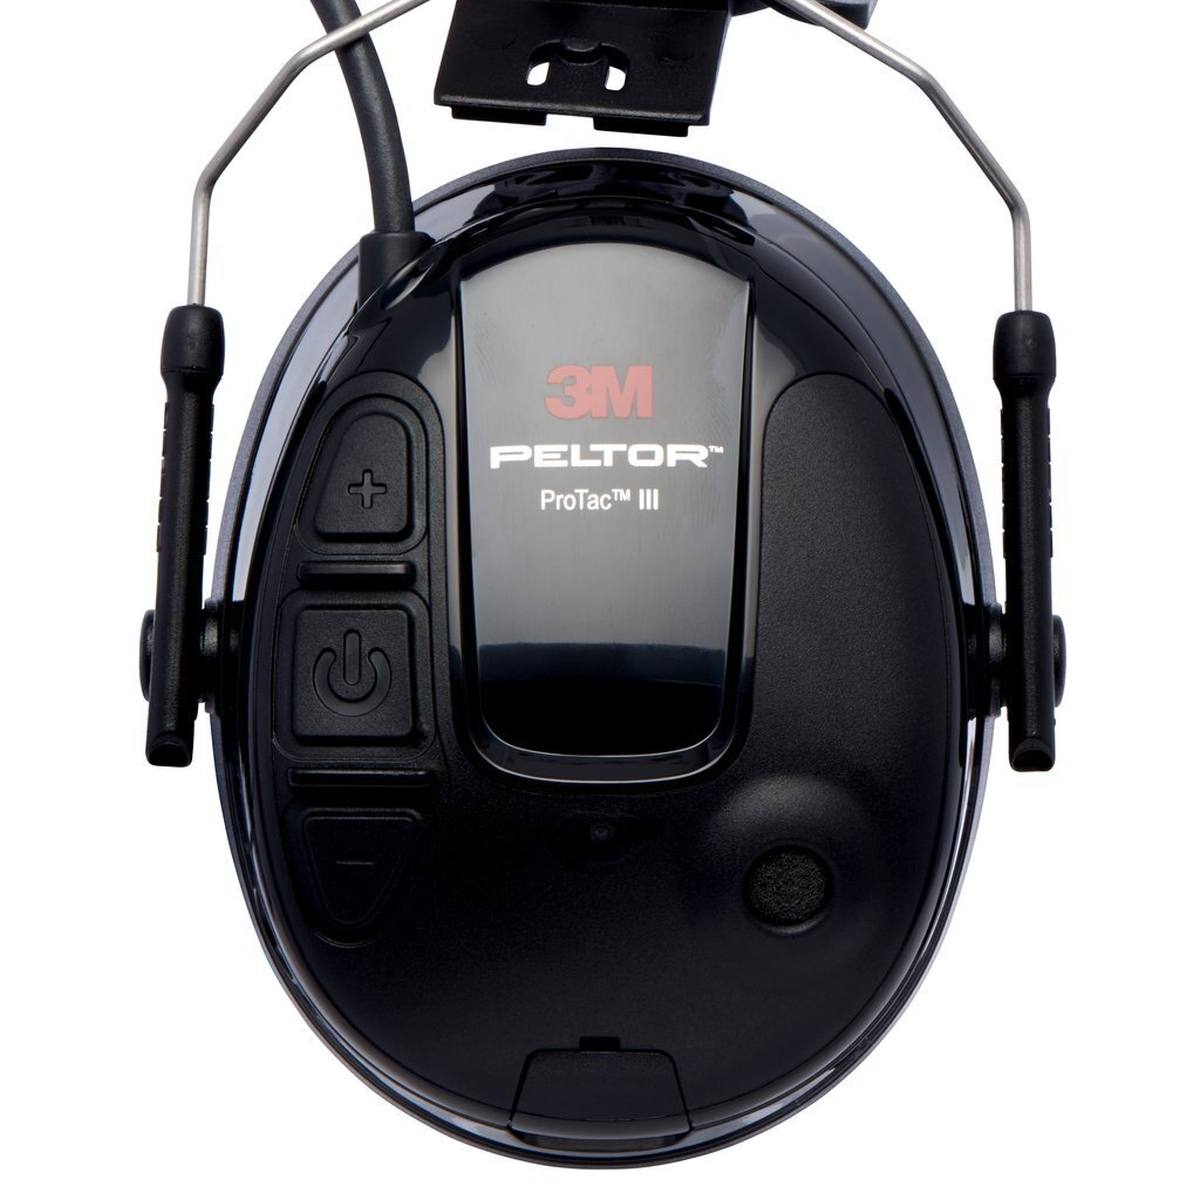 3M Peltor ProTac III Slim Gehörschutz-Headset, schwarz, Helmversion, mit aktiver, pegelabhängiger Dämmtechnologie zum Wahrnehmen von Umgebungsgeräuschen, SNR = 25 dB, schwarz